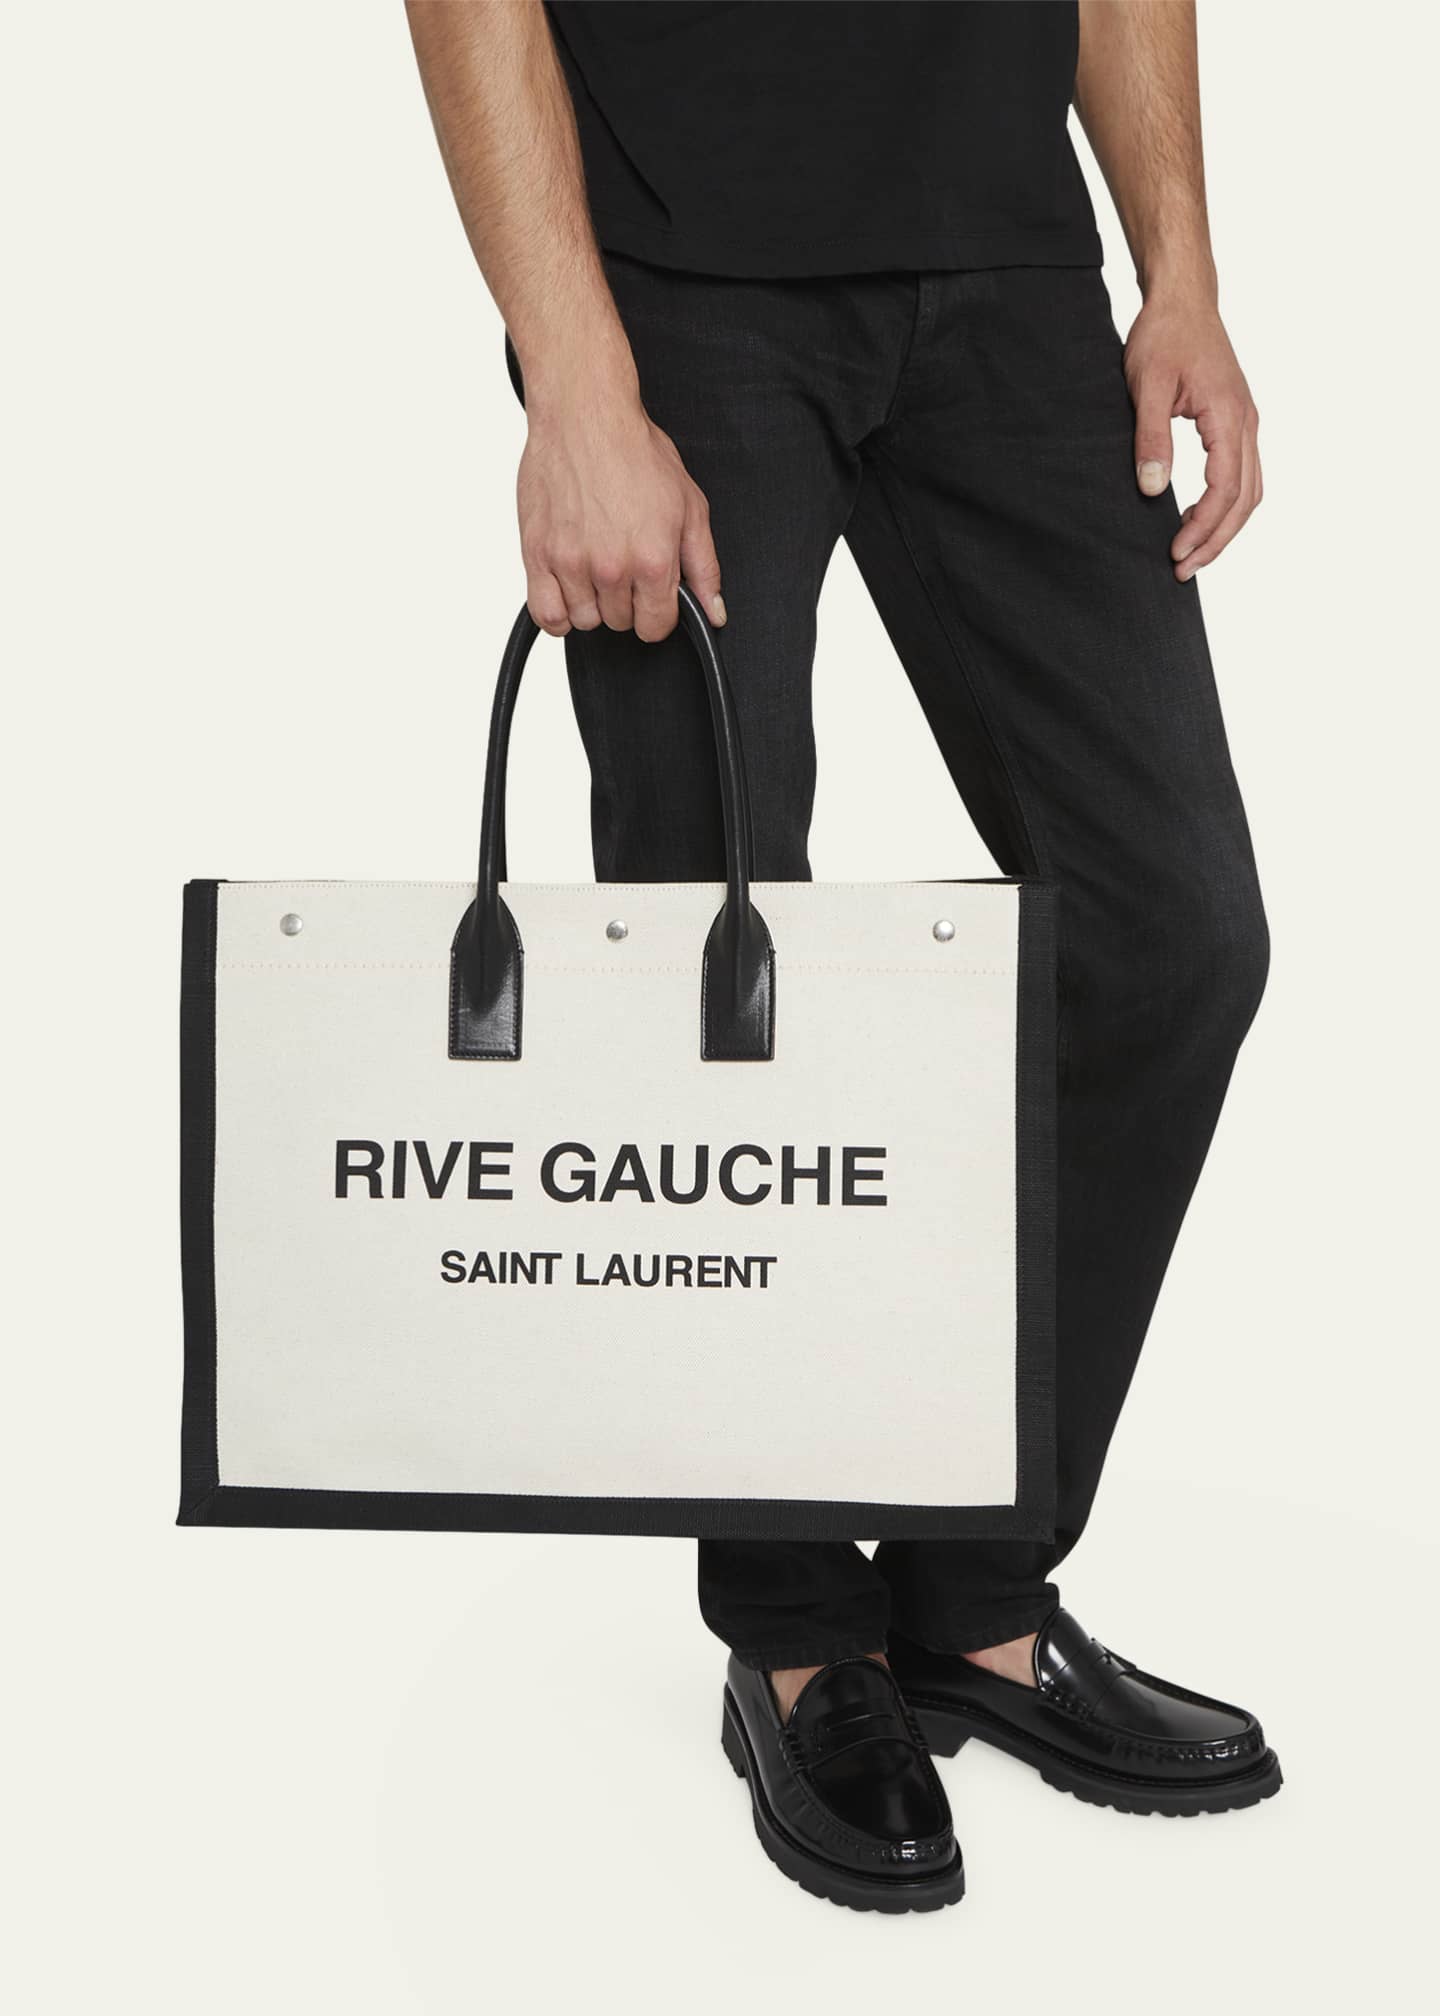 Saint Laurent Men's Rive Gauche Canvas Tote Bag